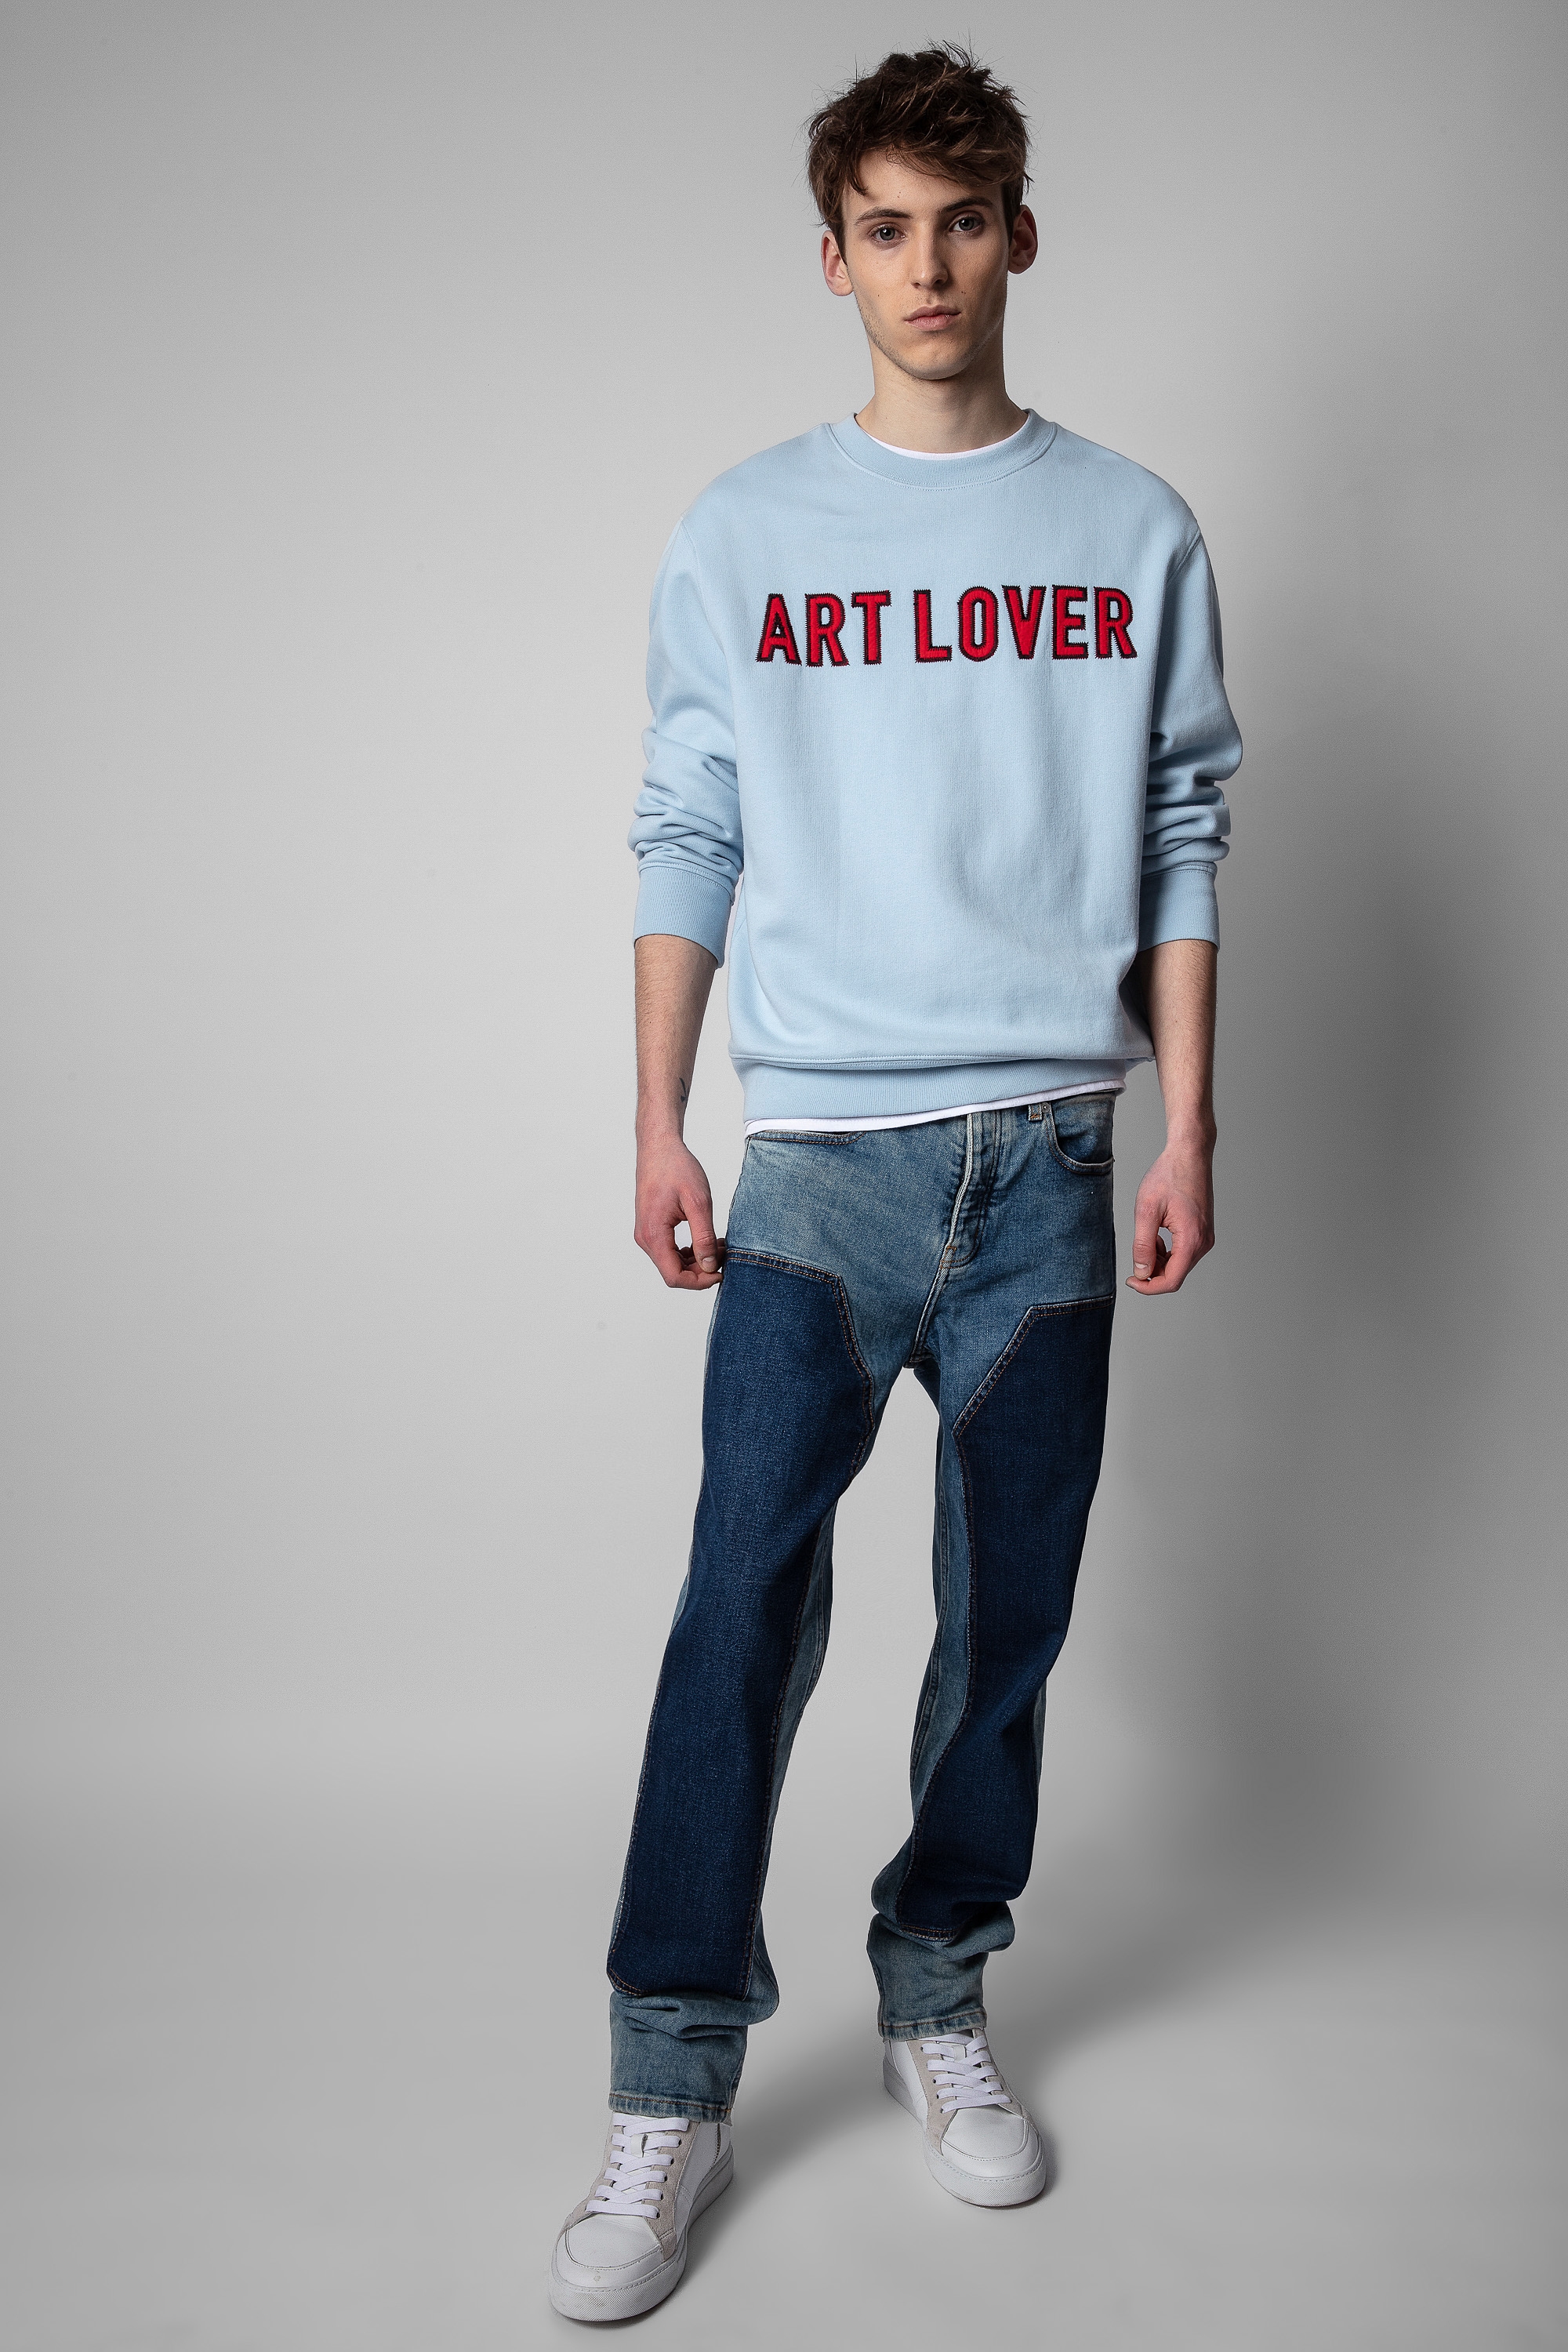 Simba Art Lover Sweatshirt